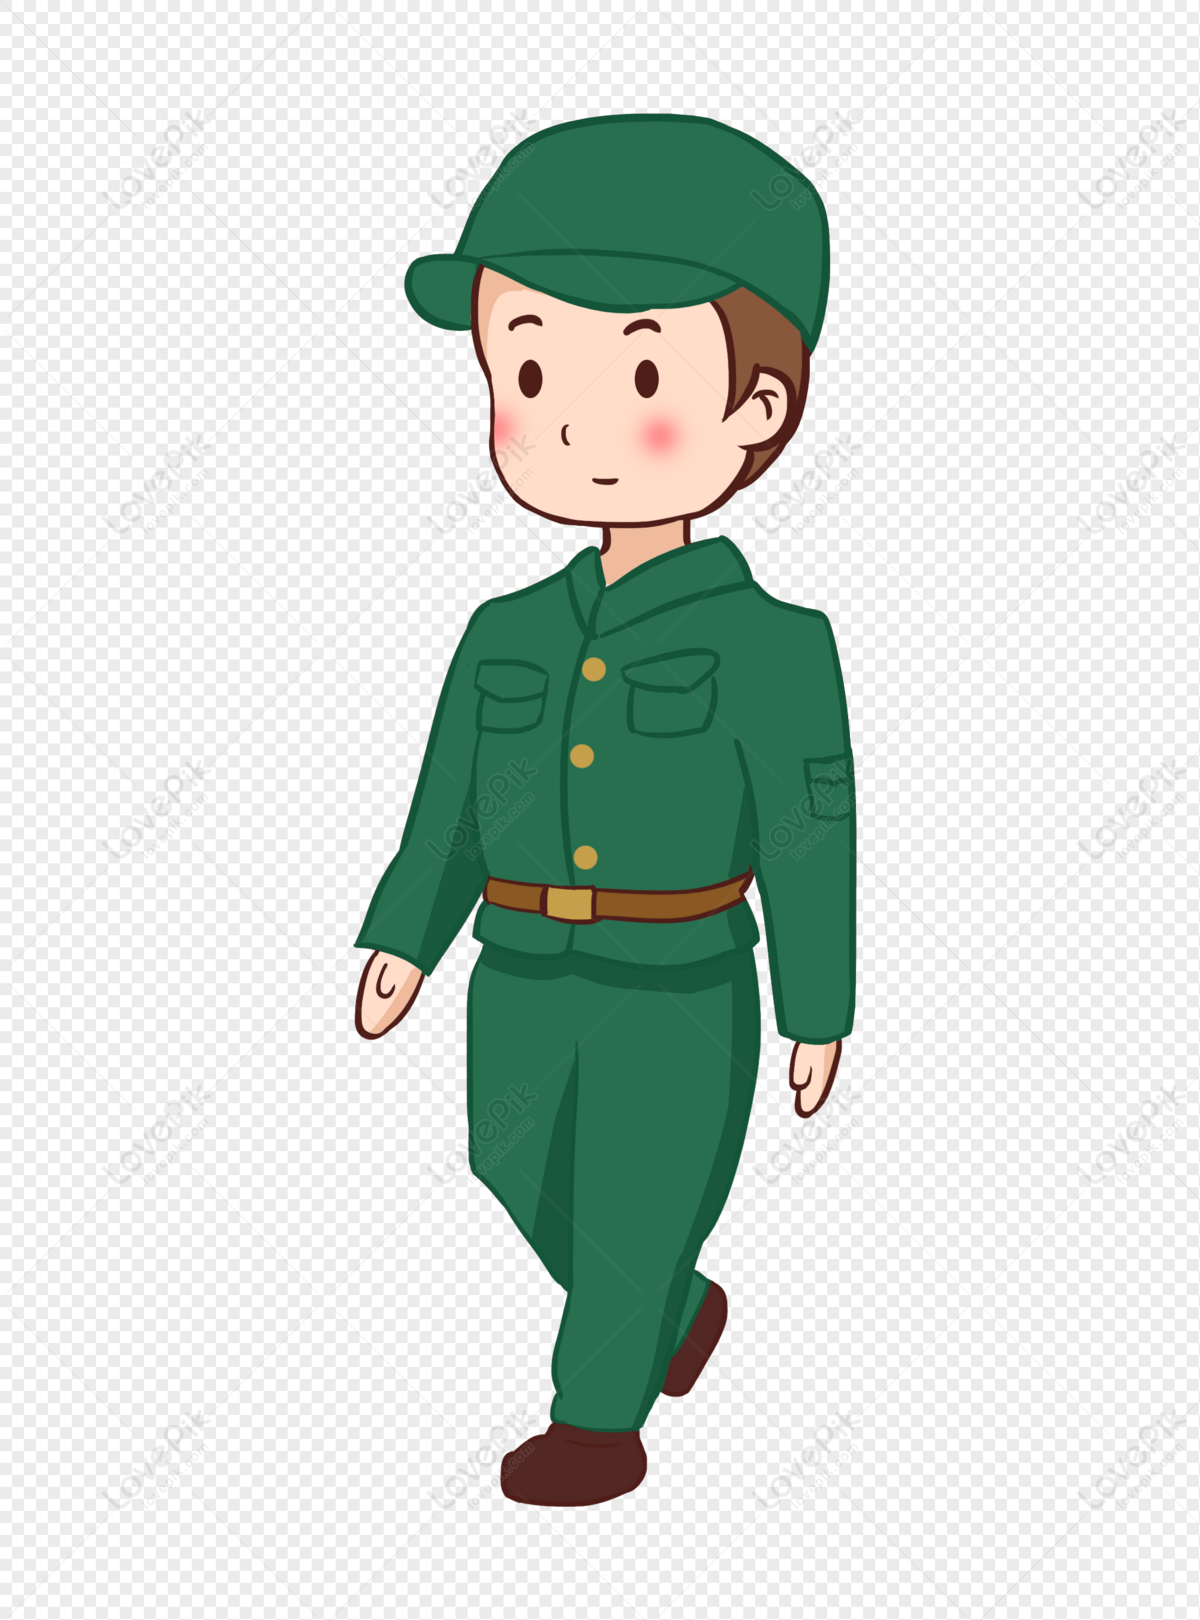 Quân đội màu xanh lá cây luôn tạo cảm giác mạnh mẽ và khỏe khoắn. Hãy ngắm nhìn hình ảnh đầy uy lực này và cảm nhận sự mạnh mẽ từ phần trang phục của người lính.